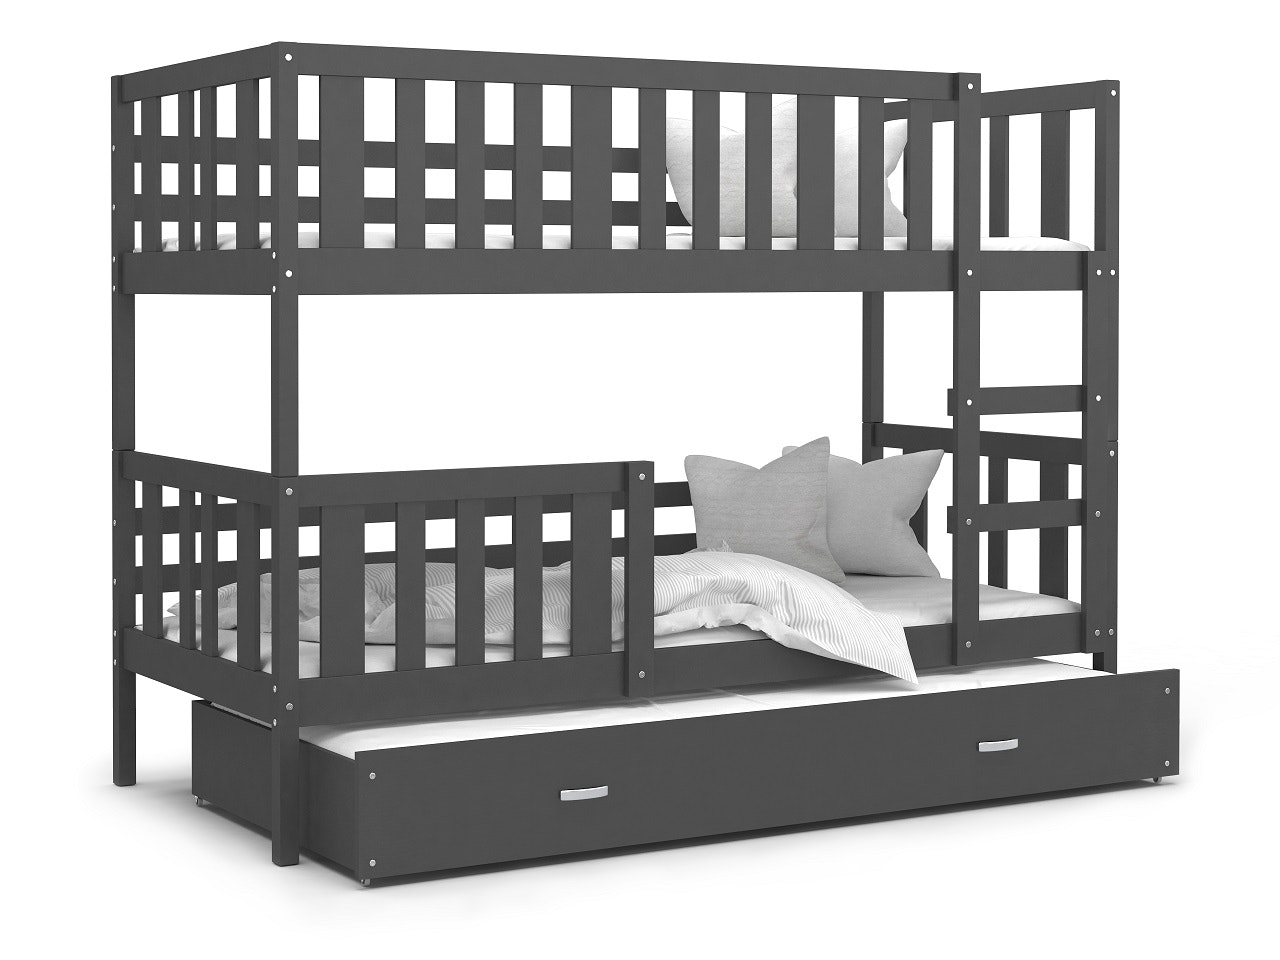 Bunk bed with 3 beds, Olof Bunk bed with 3 beds, Olof